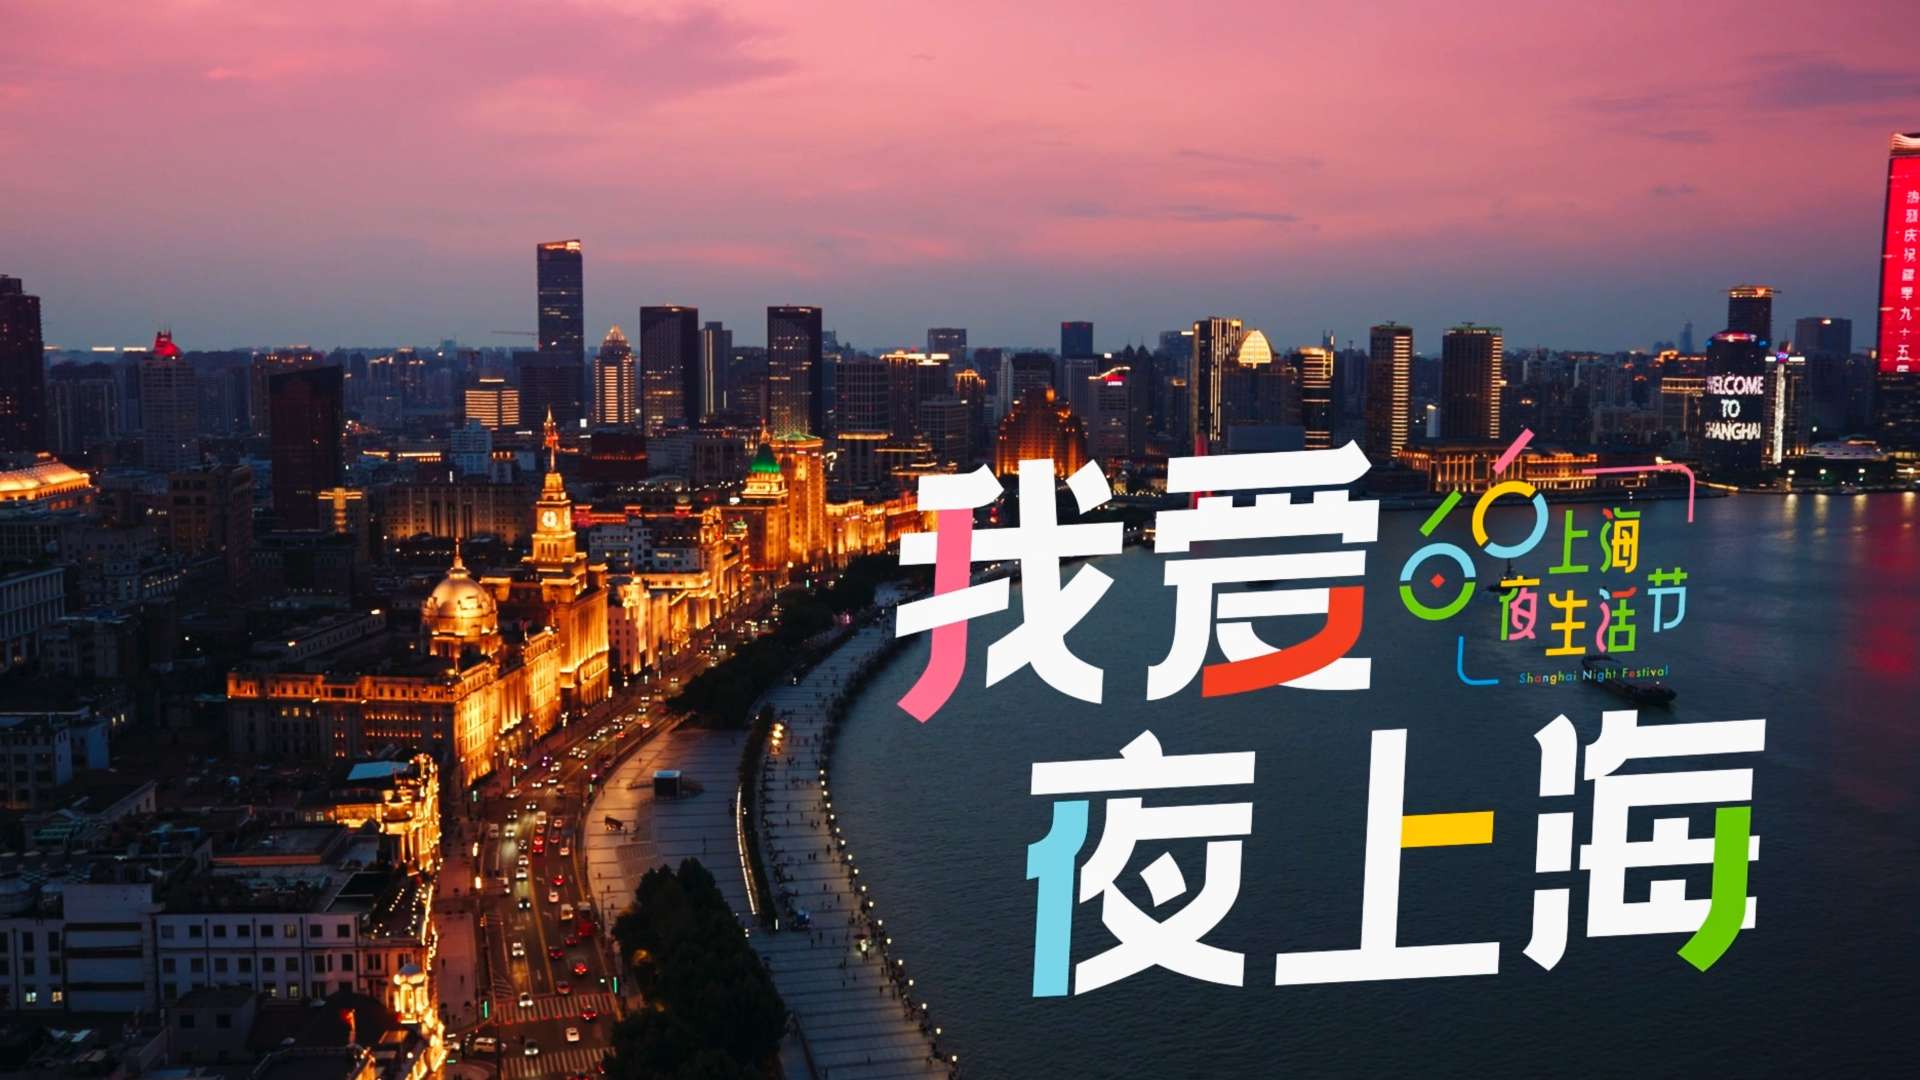 我爱夜上海 ｜ 上海夜间经济推介片